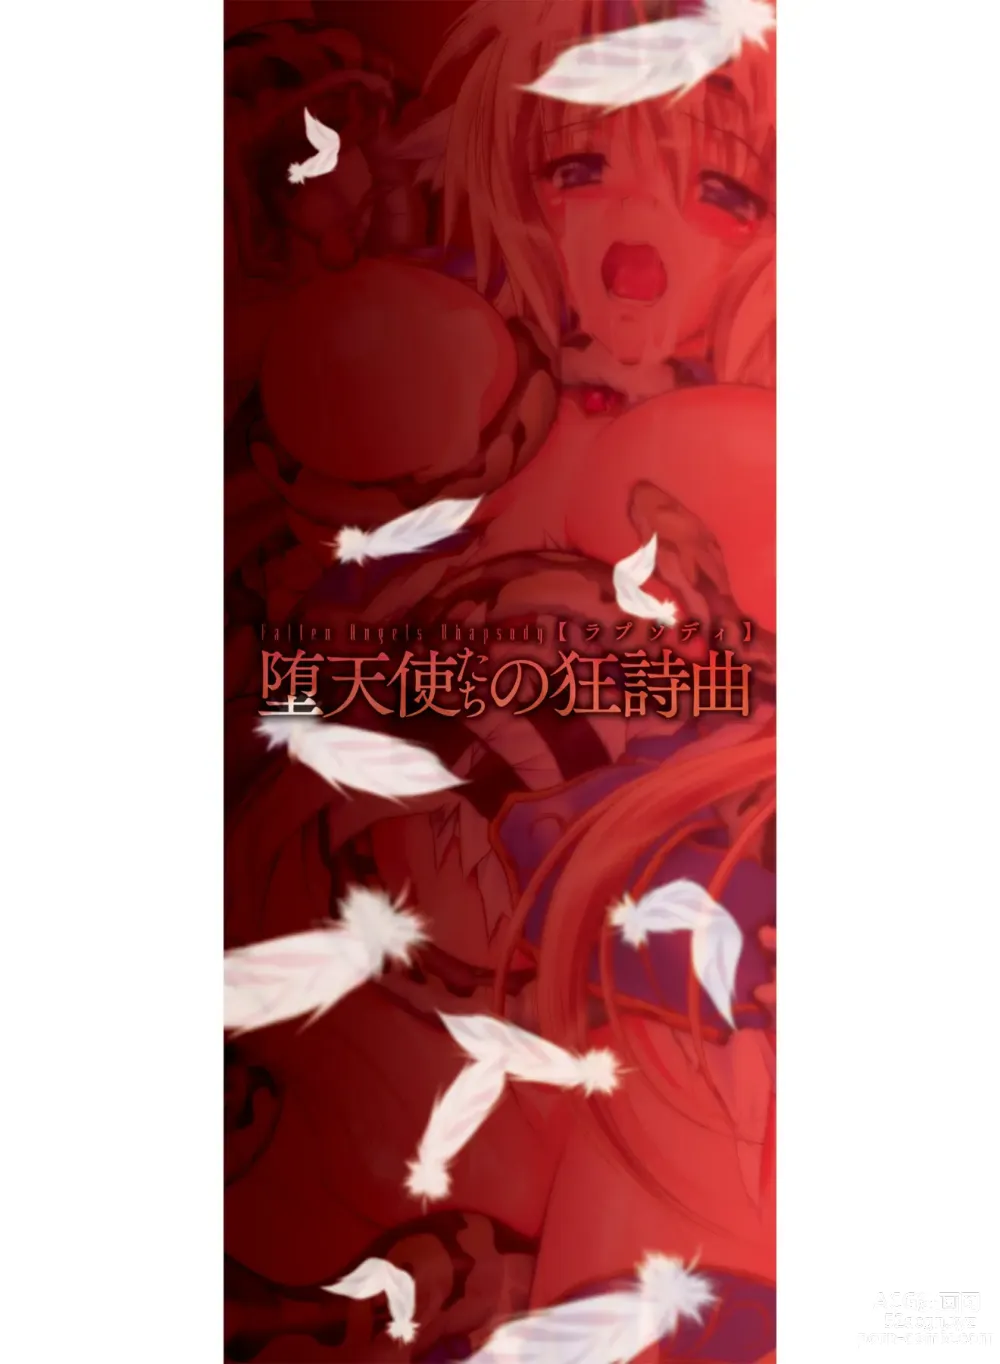 Page 183 of manga Datenshi-tachi no Rhapsody - Fallen Angels Rhapsody